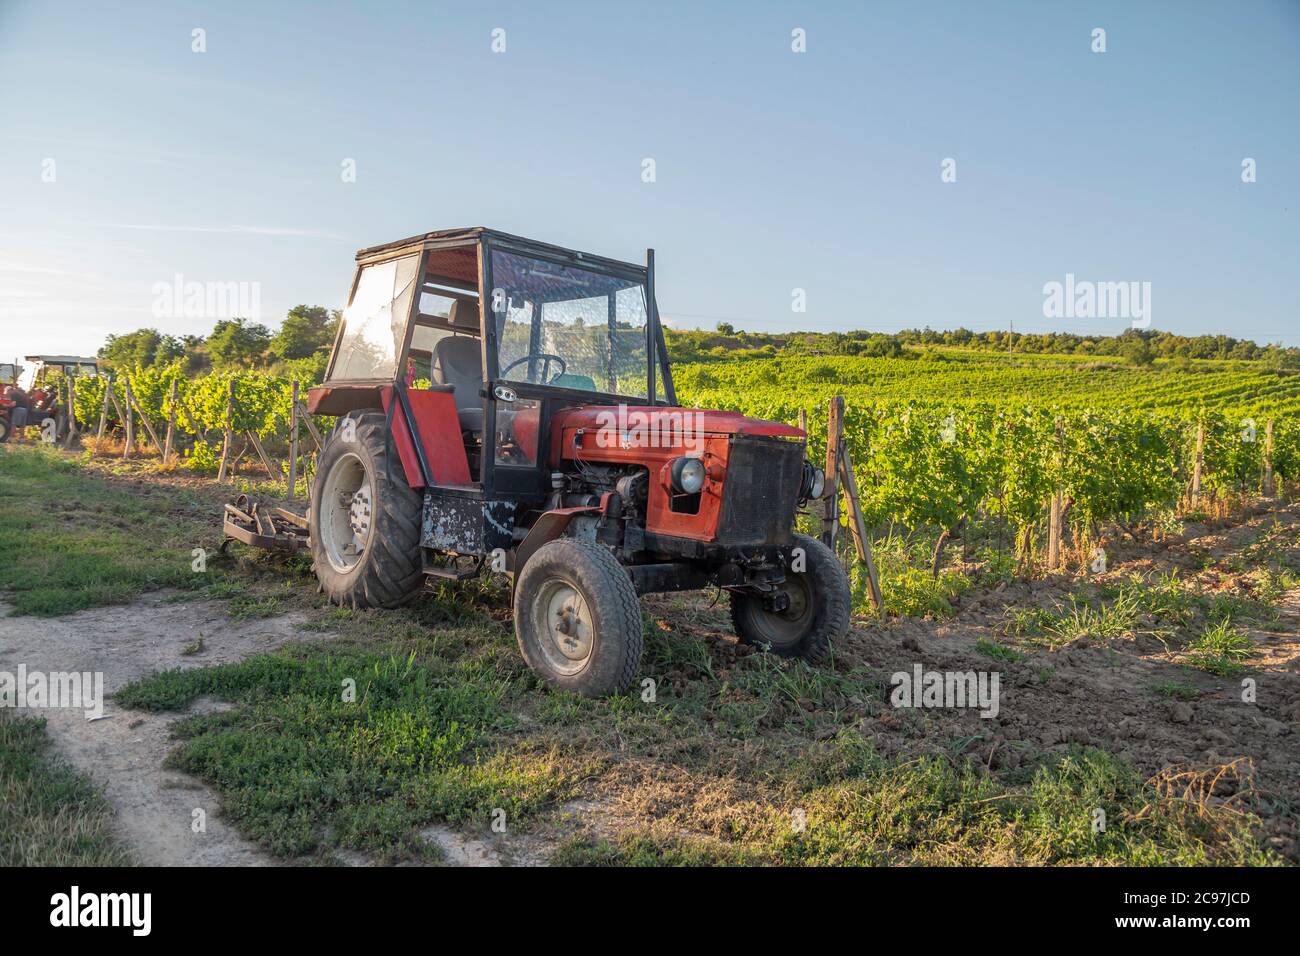 tracteur dans les vignobles le jour de l'été avec ciel bleu Banque D'Images